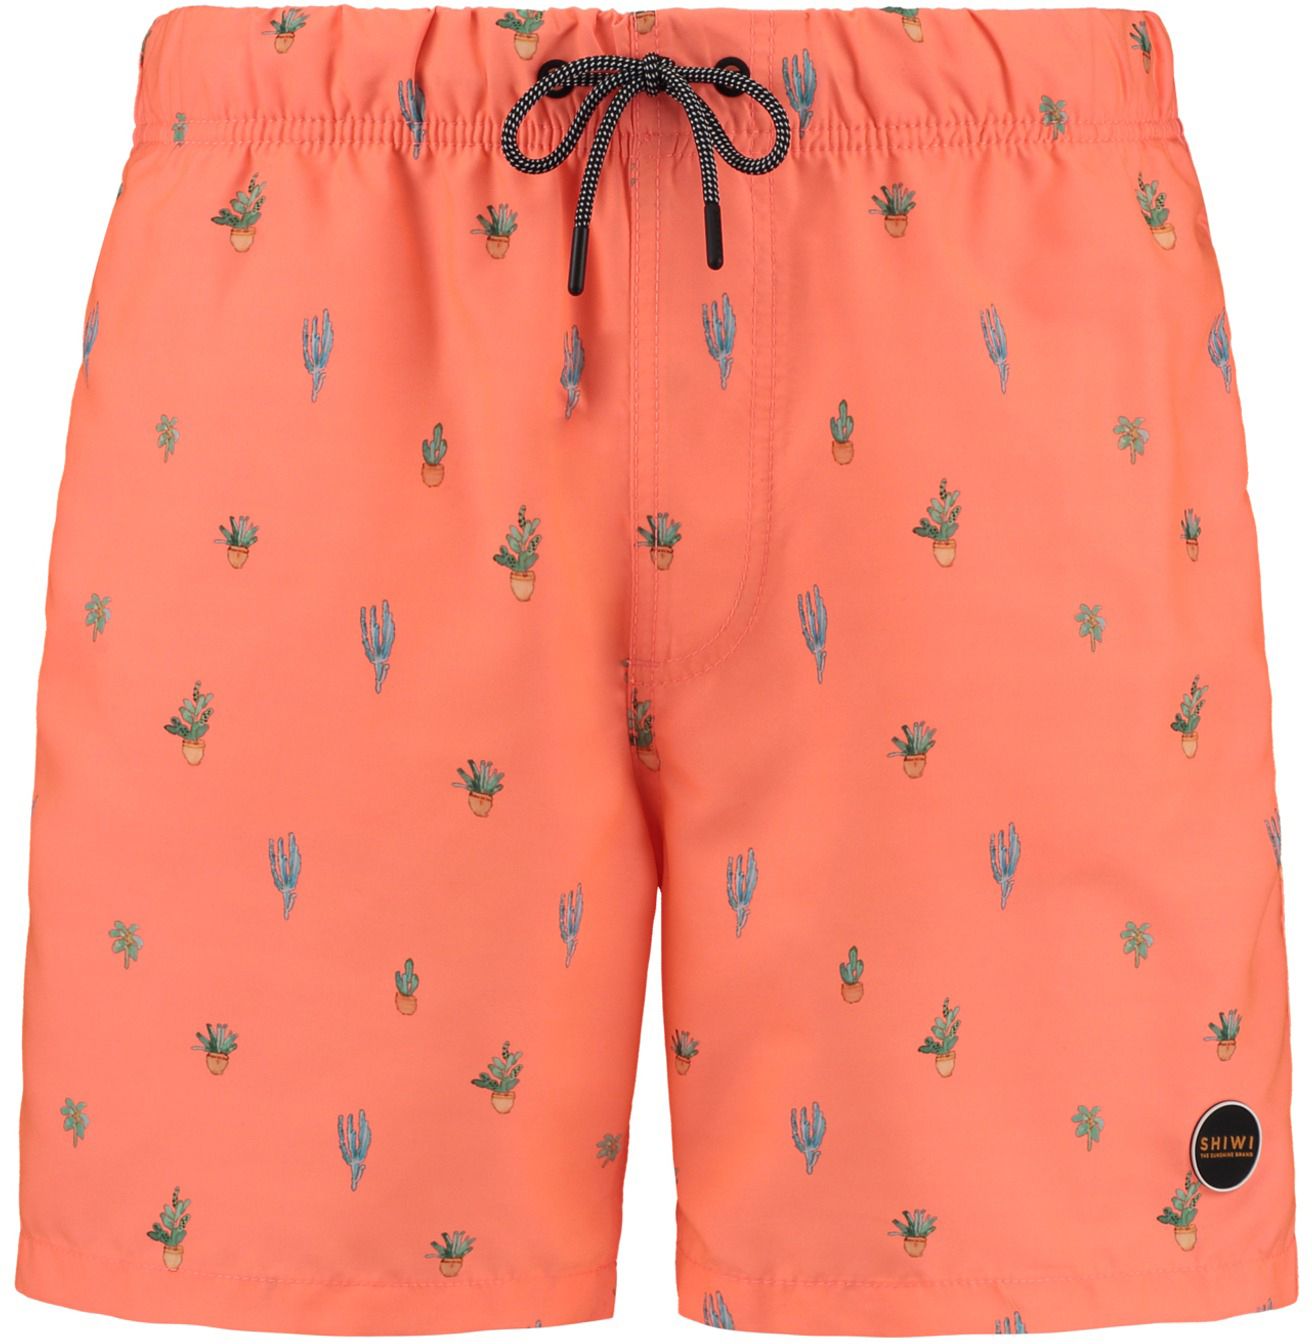 Shiwi Swimshorts Cacti Orange size M